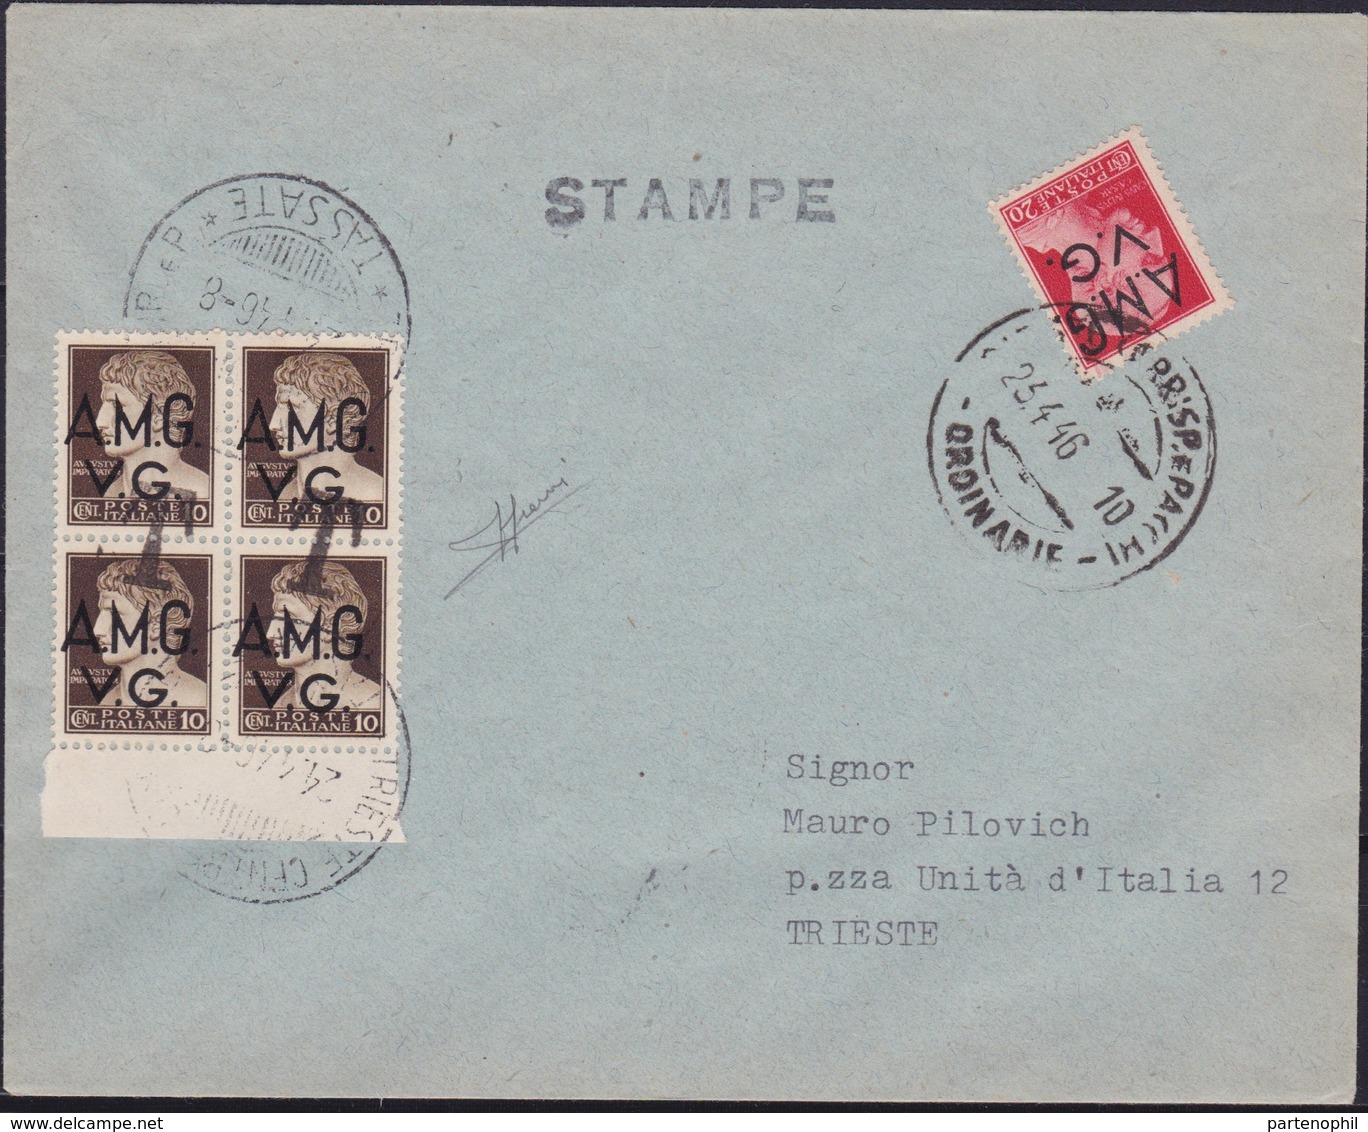 Venezia Giulia - 347 * Lettera Per Stampe Da Trieste Del 23.4.46 Per Città, Affrancata Con Imperiale Soprastampati A.M.G - Marcofilie